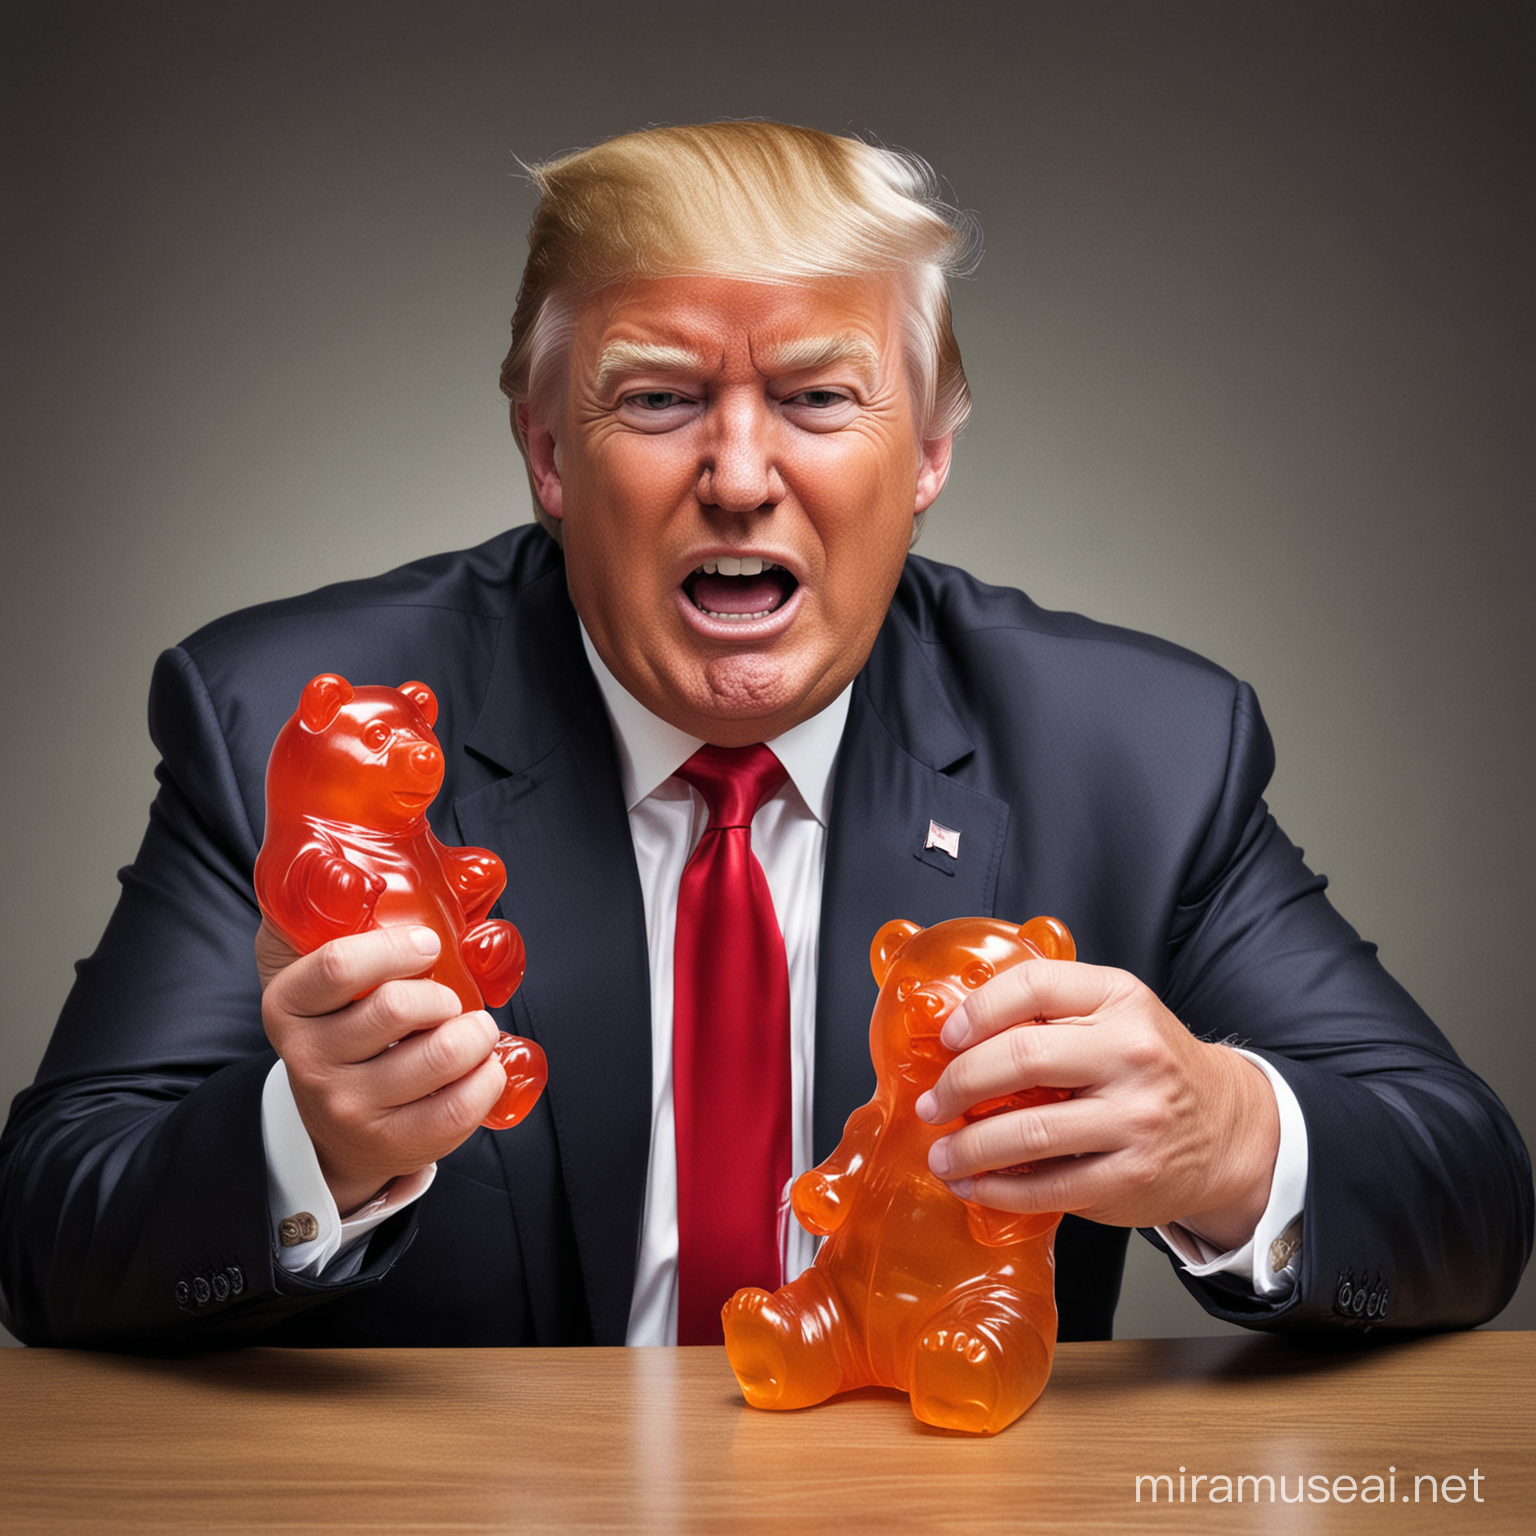 Donald Trump Enjoying a Gigantic Gummy Bear Hilarious Meme Image